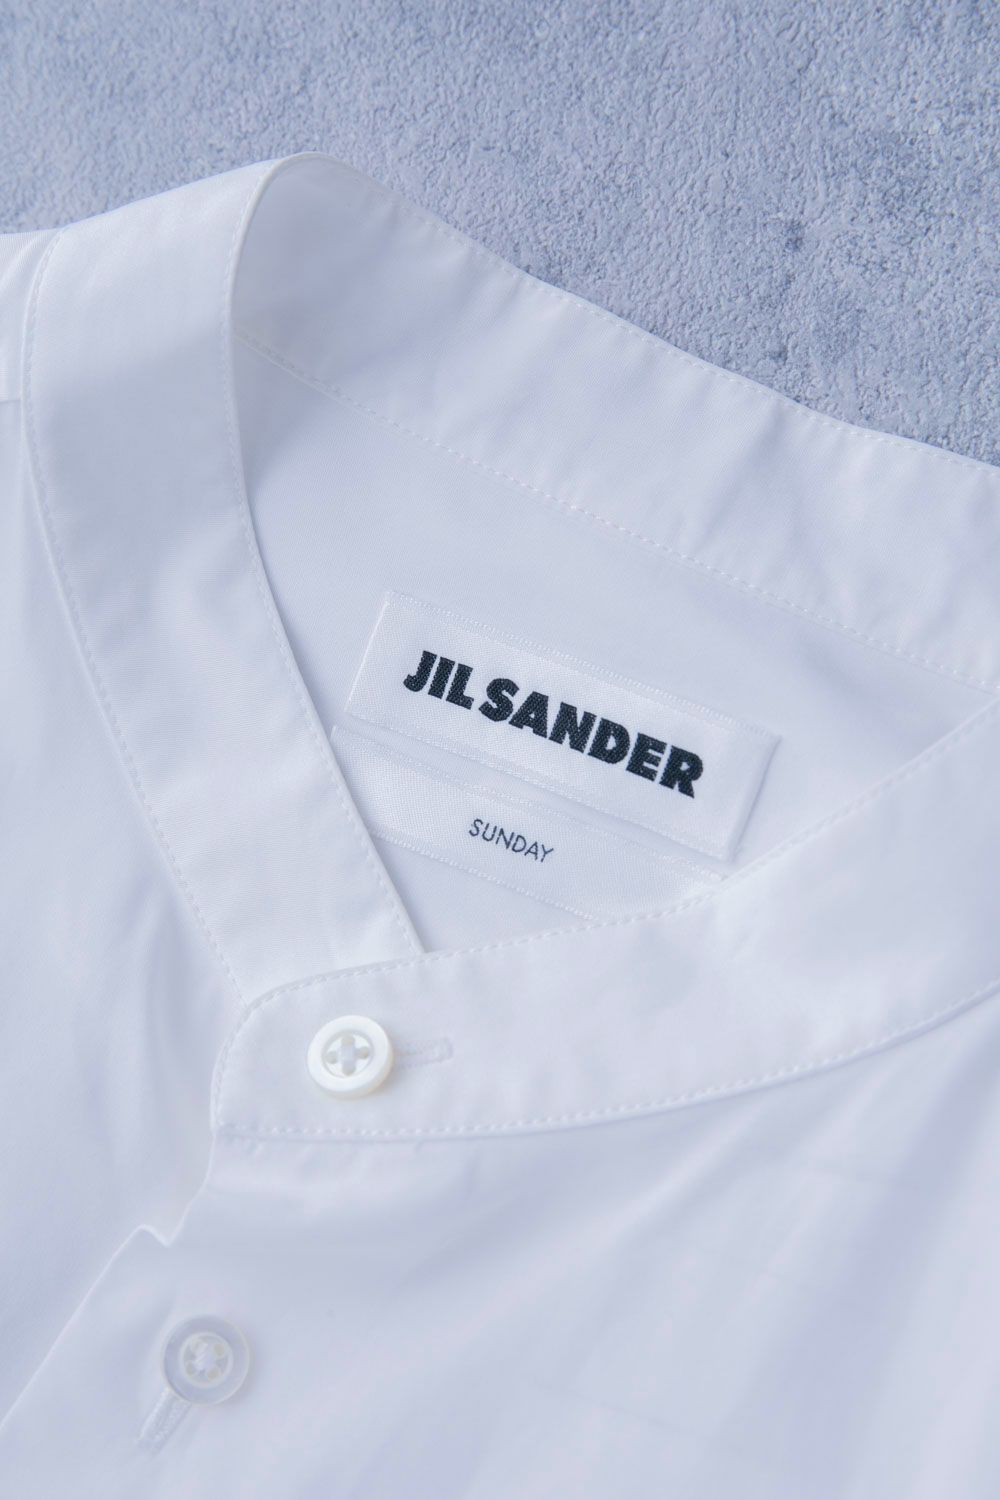 JIL SANDER ジルサンダー Sunday ロングシャツ/スタンドカラーロング